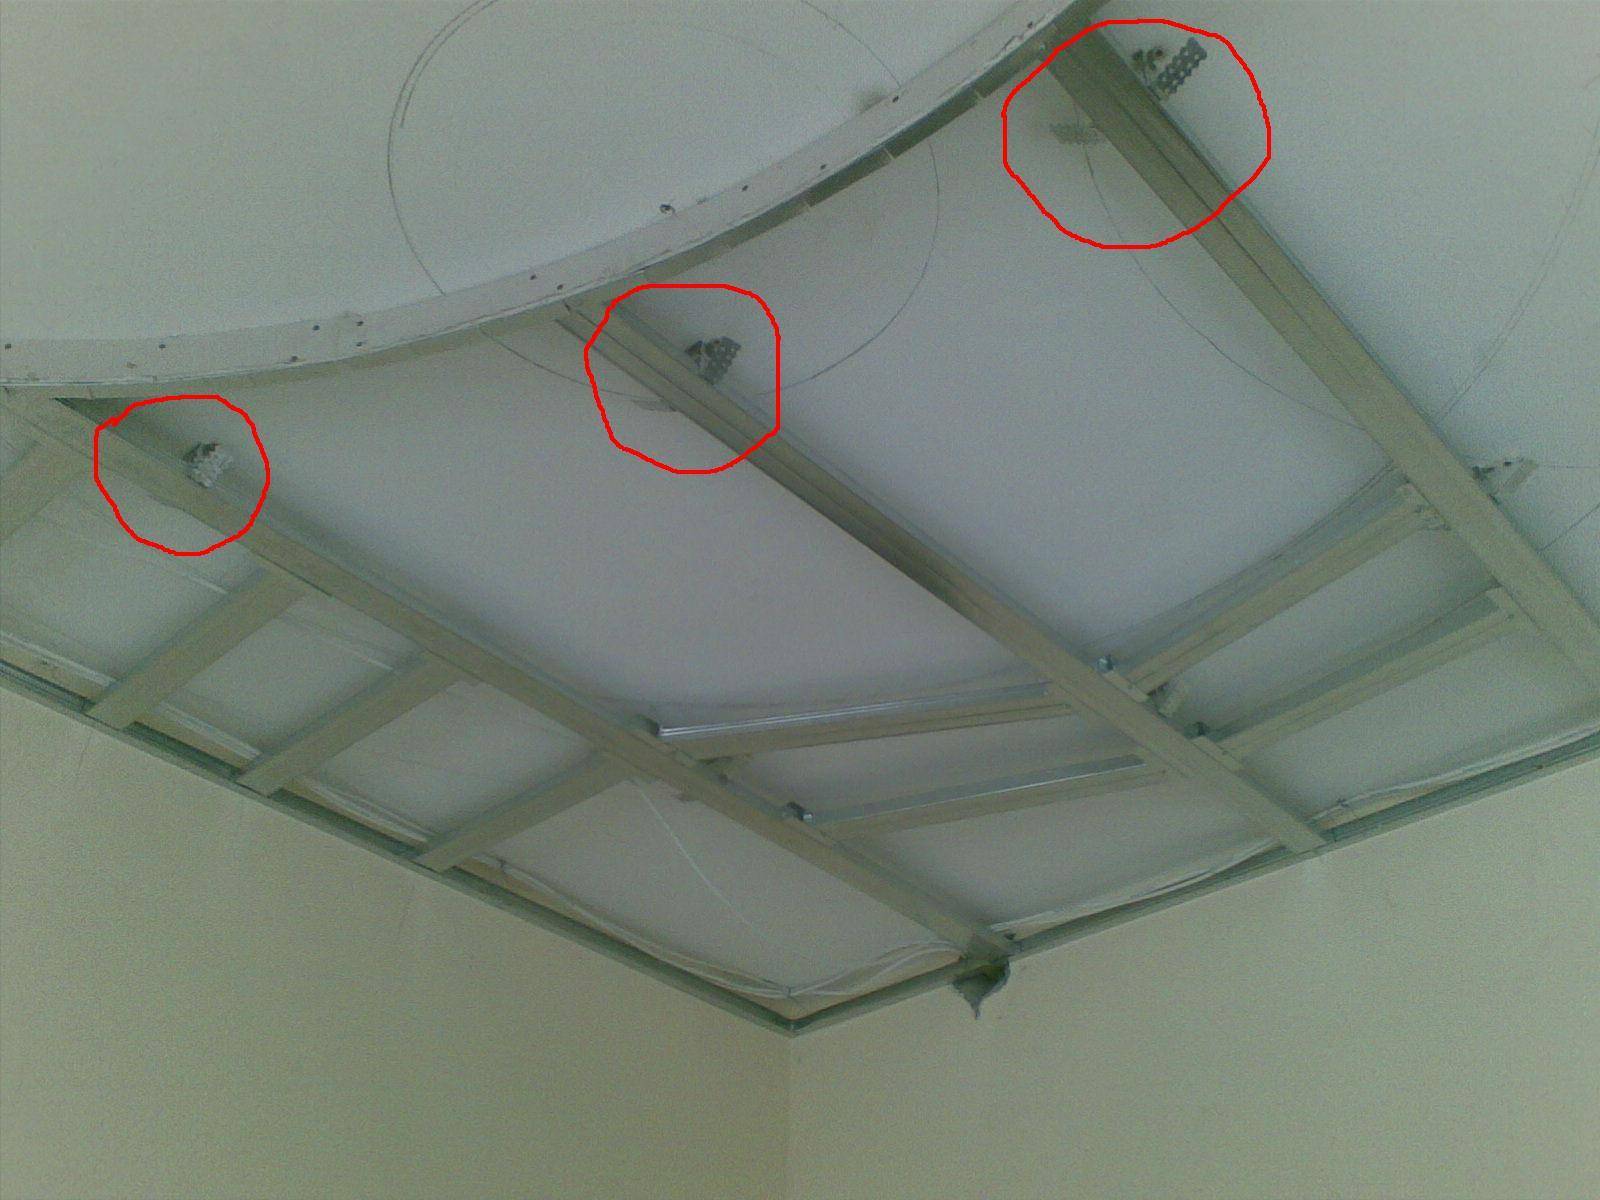 Потолок из гипсокартона с подсветкой своими руками + чертежи, фото